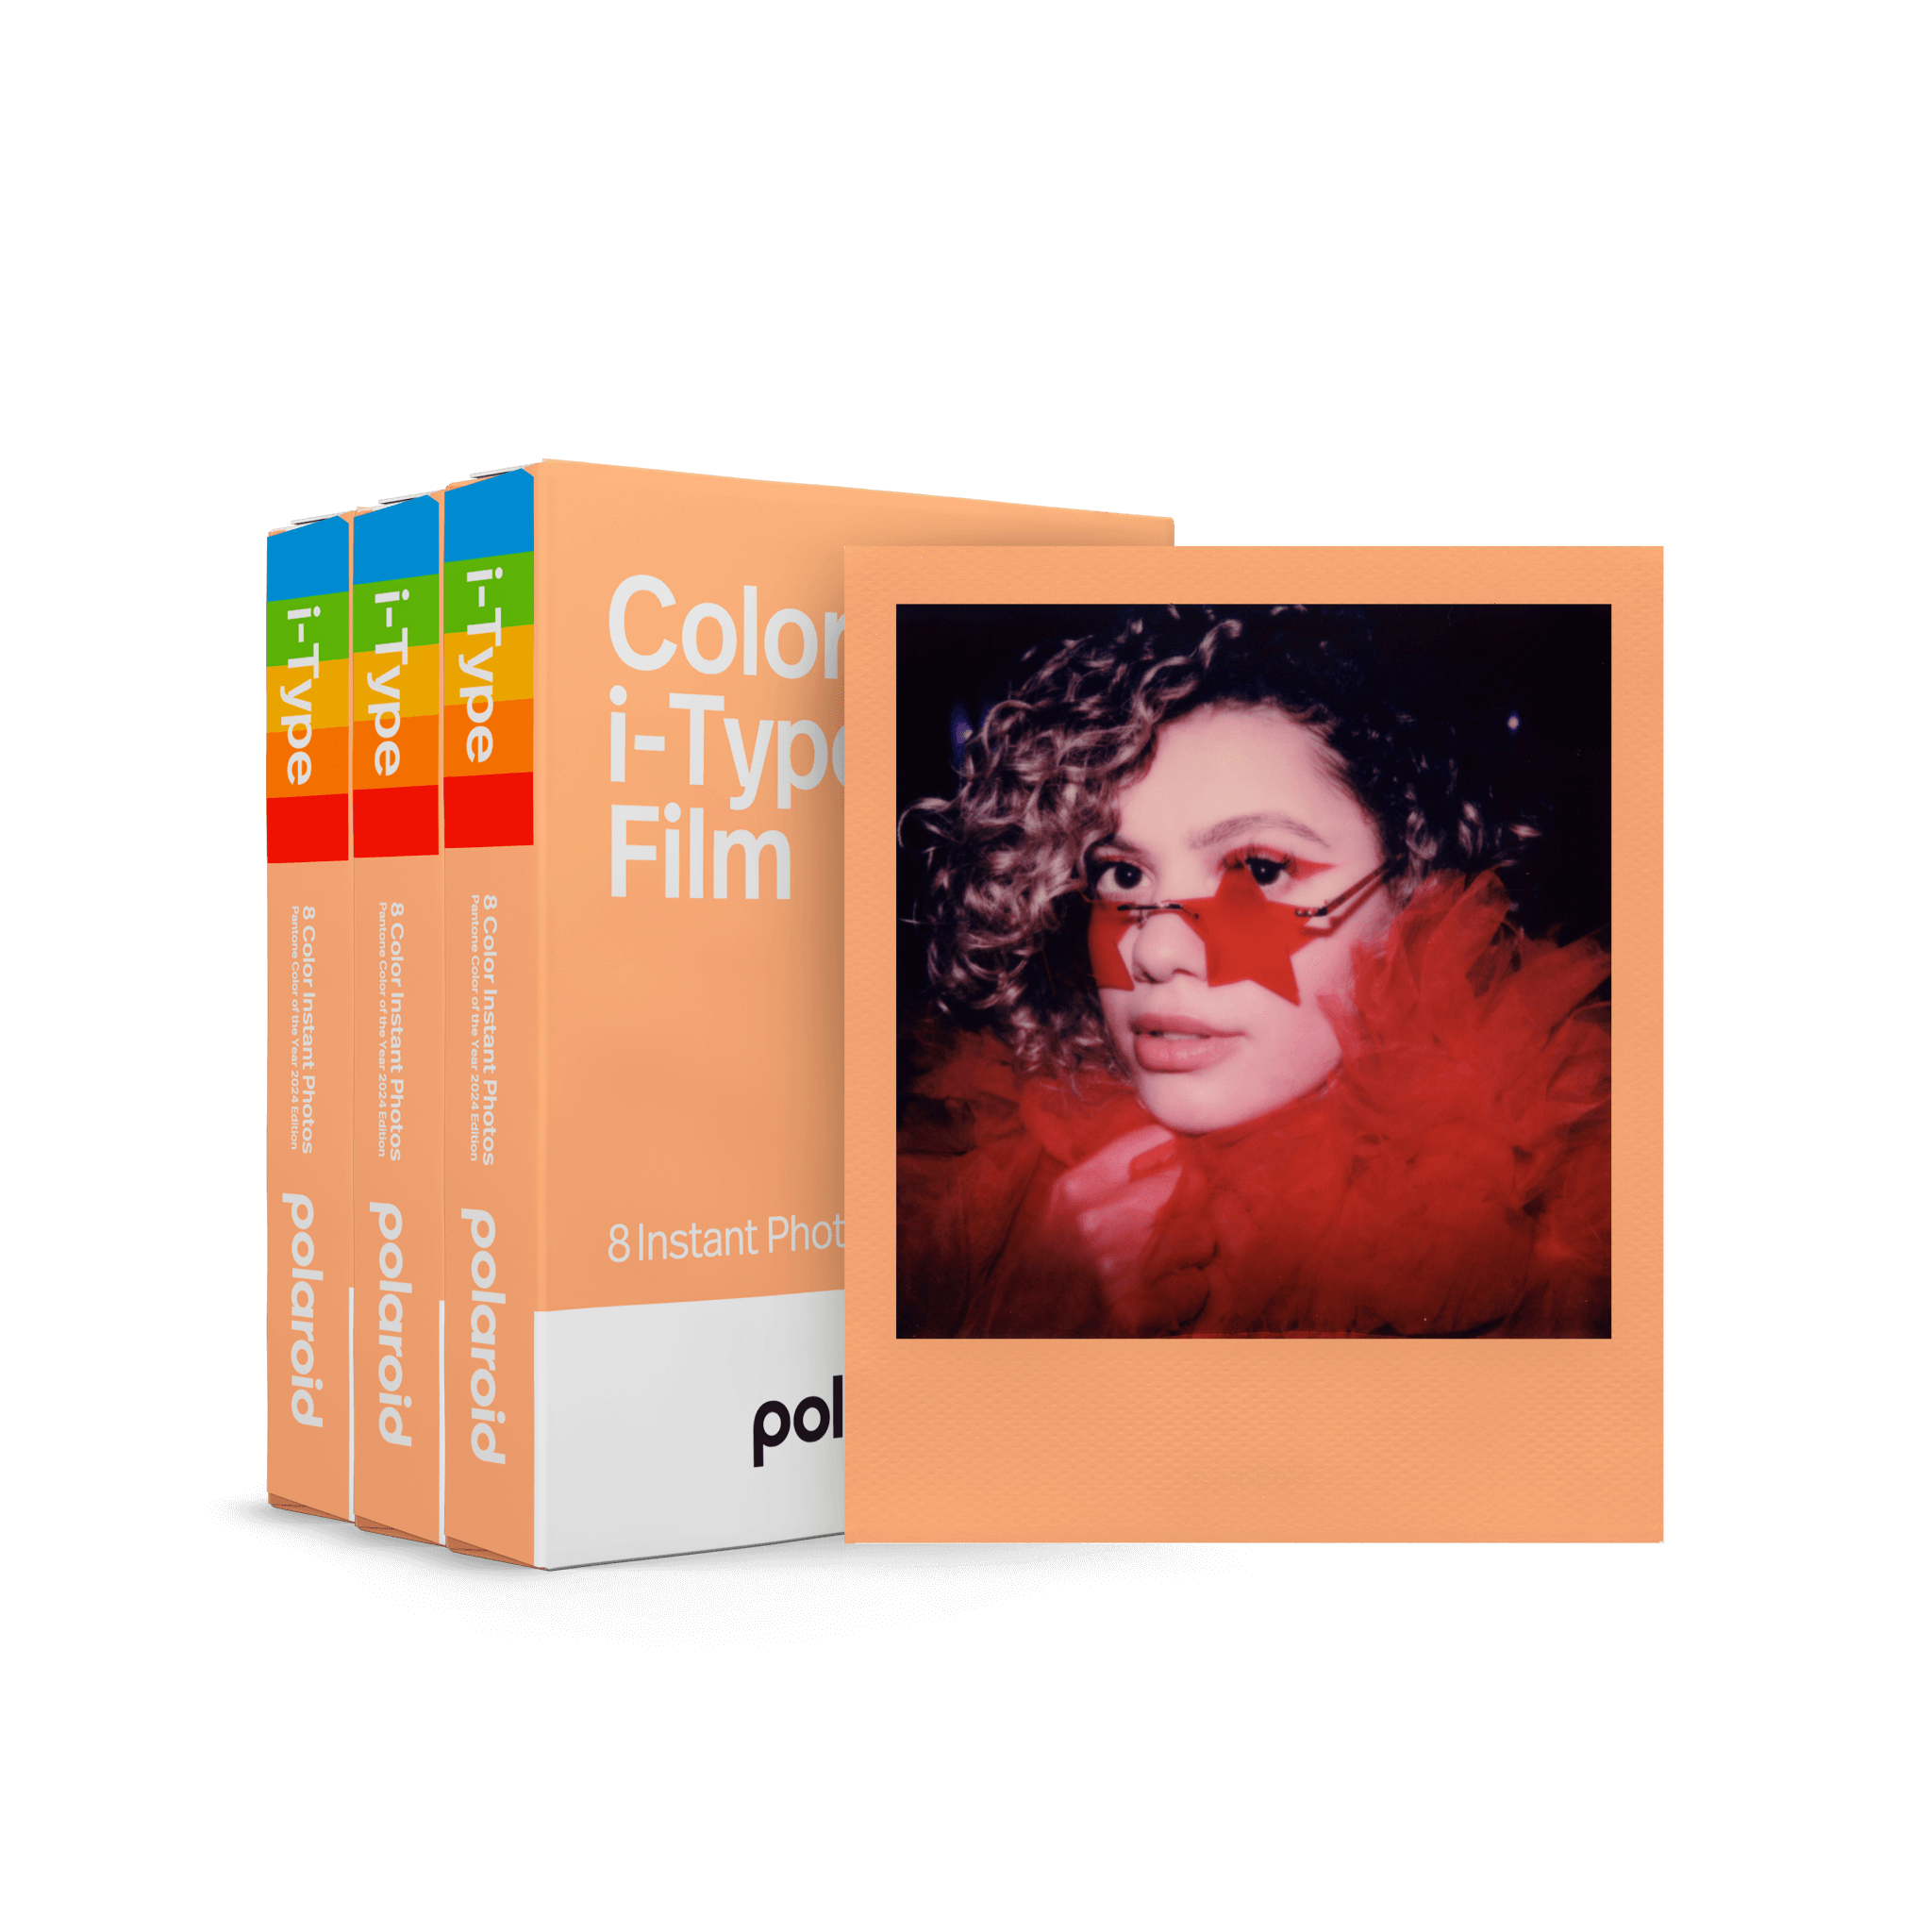 Papier photo instantané POLAROID Film i-Type couleur - Pack triple